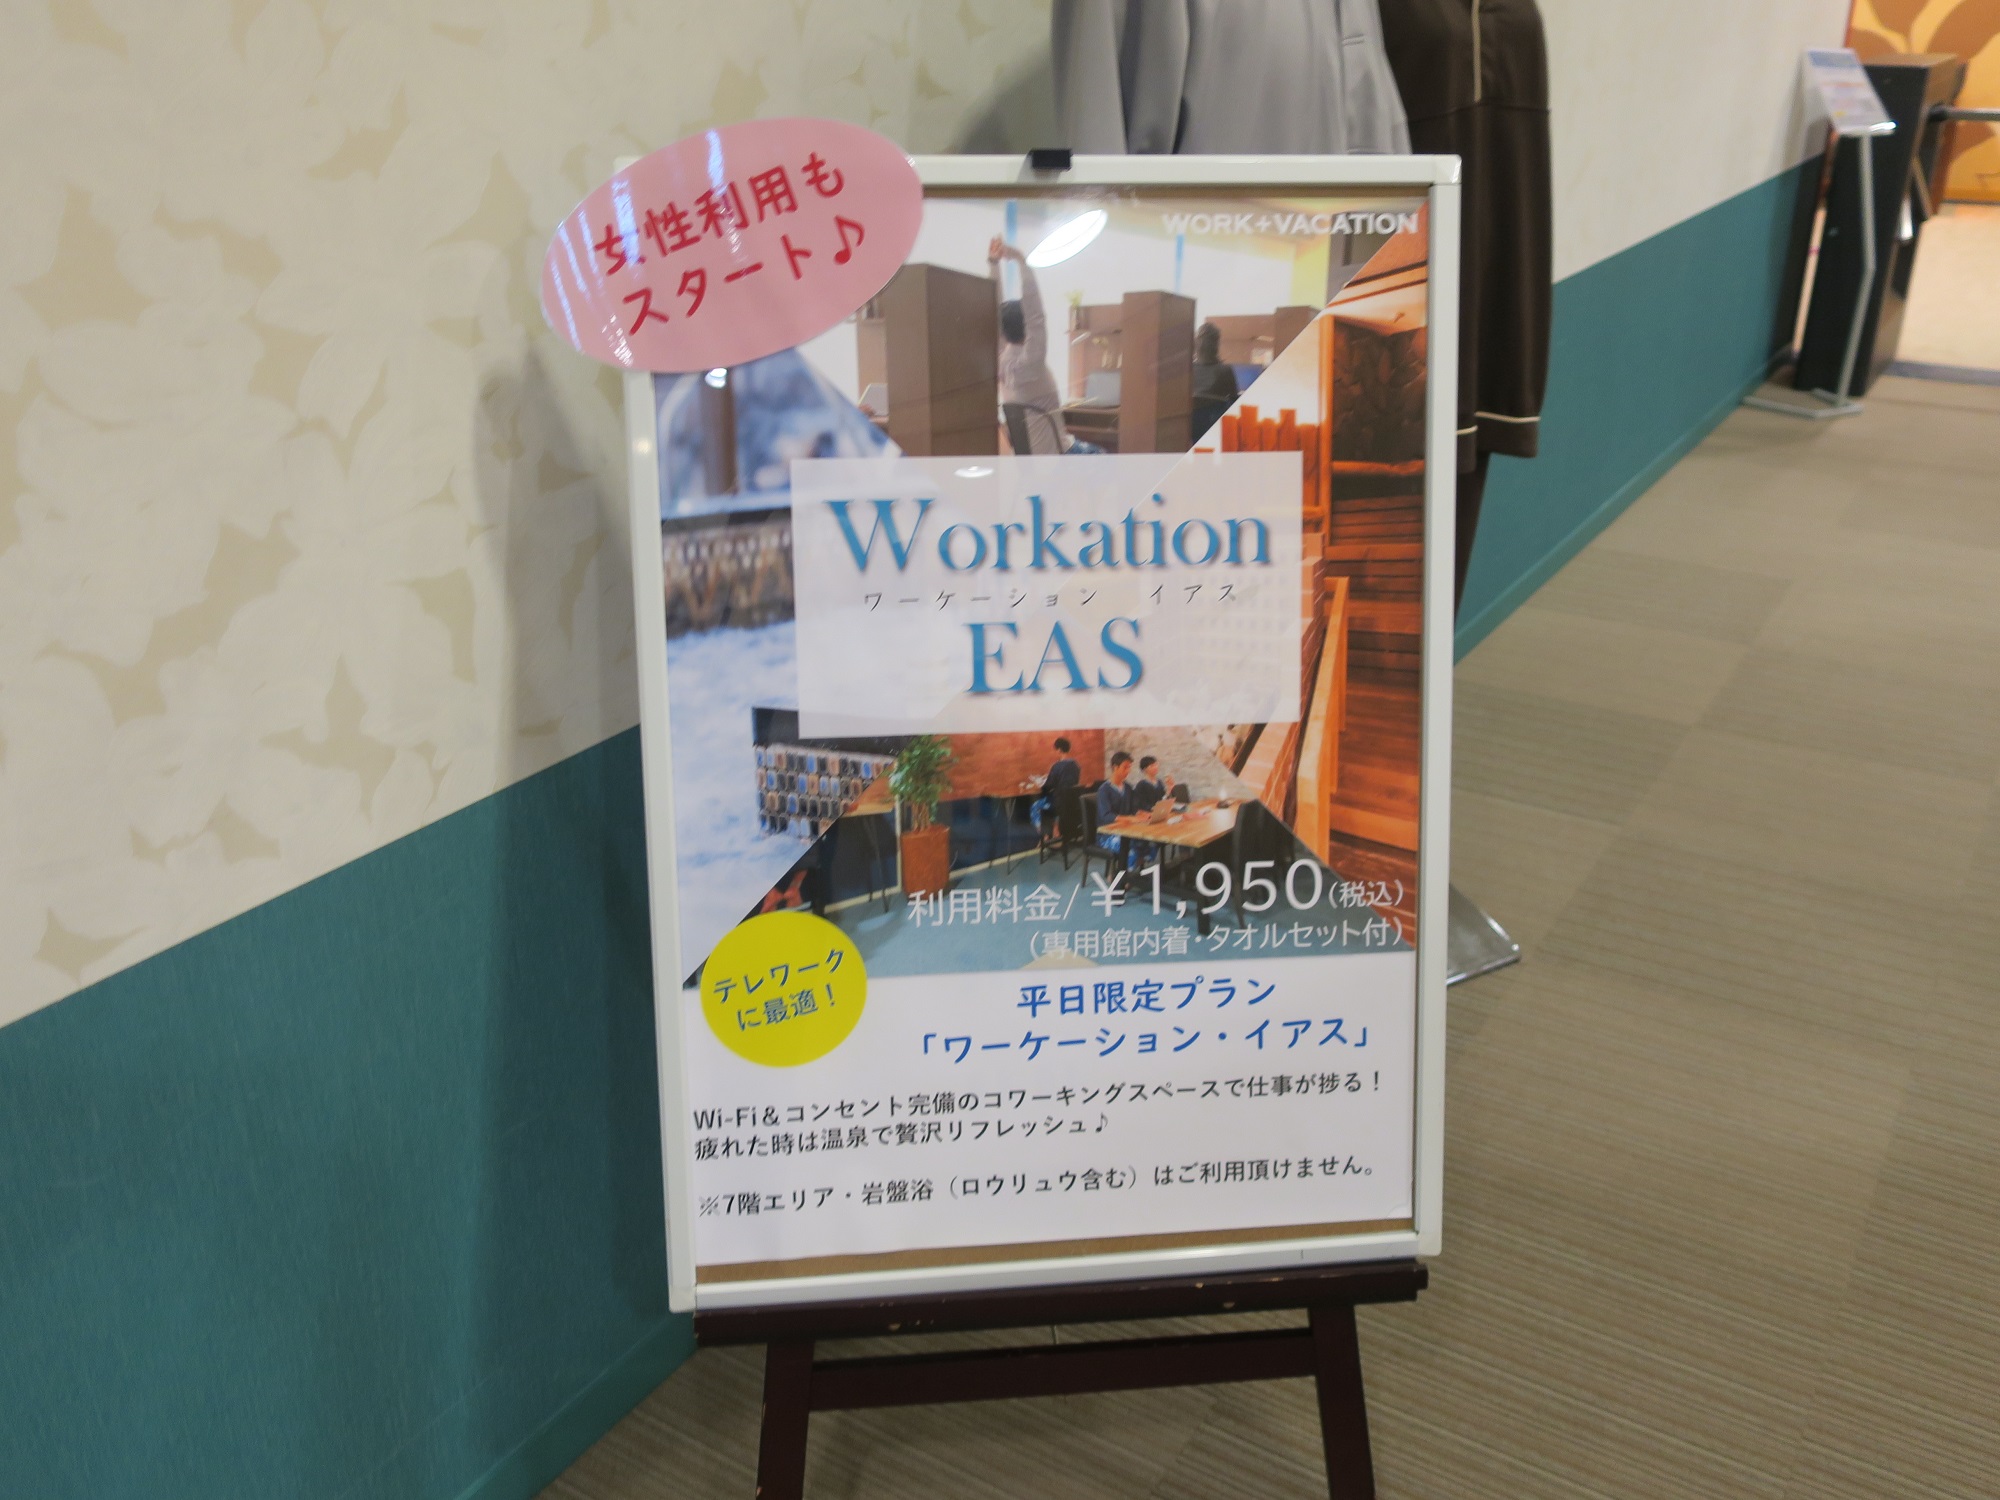 横浜天然温泉 SPA EAS 平日限定でワーケーション・イアスなるプランができました